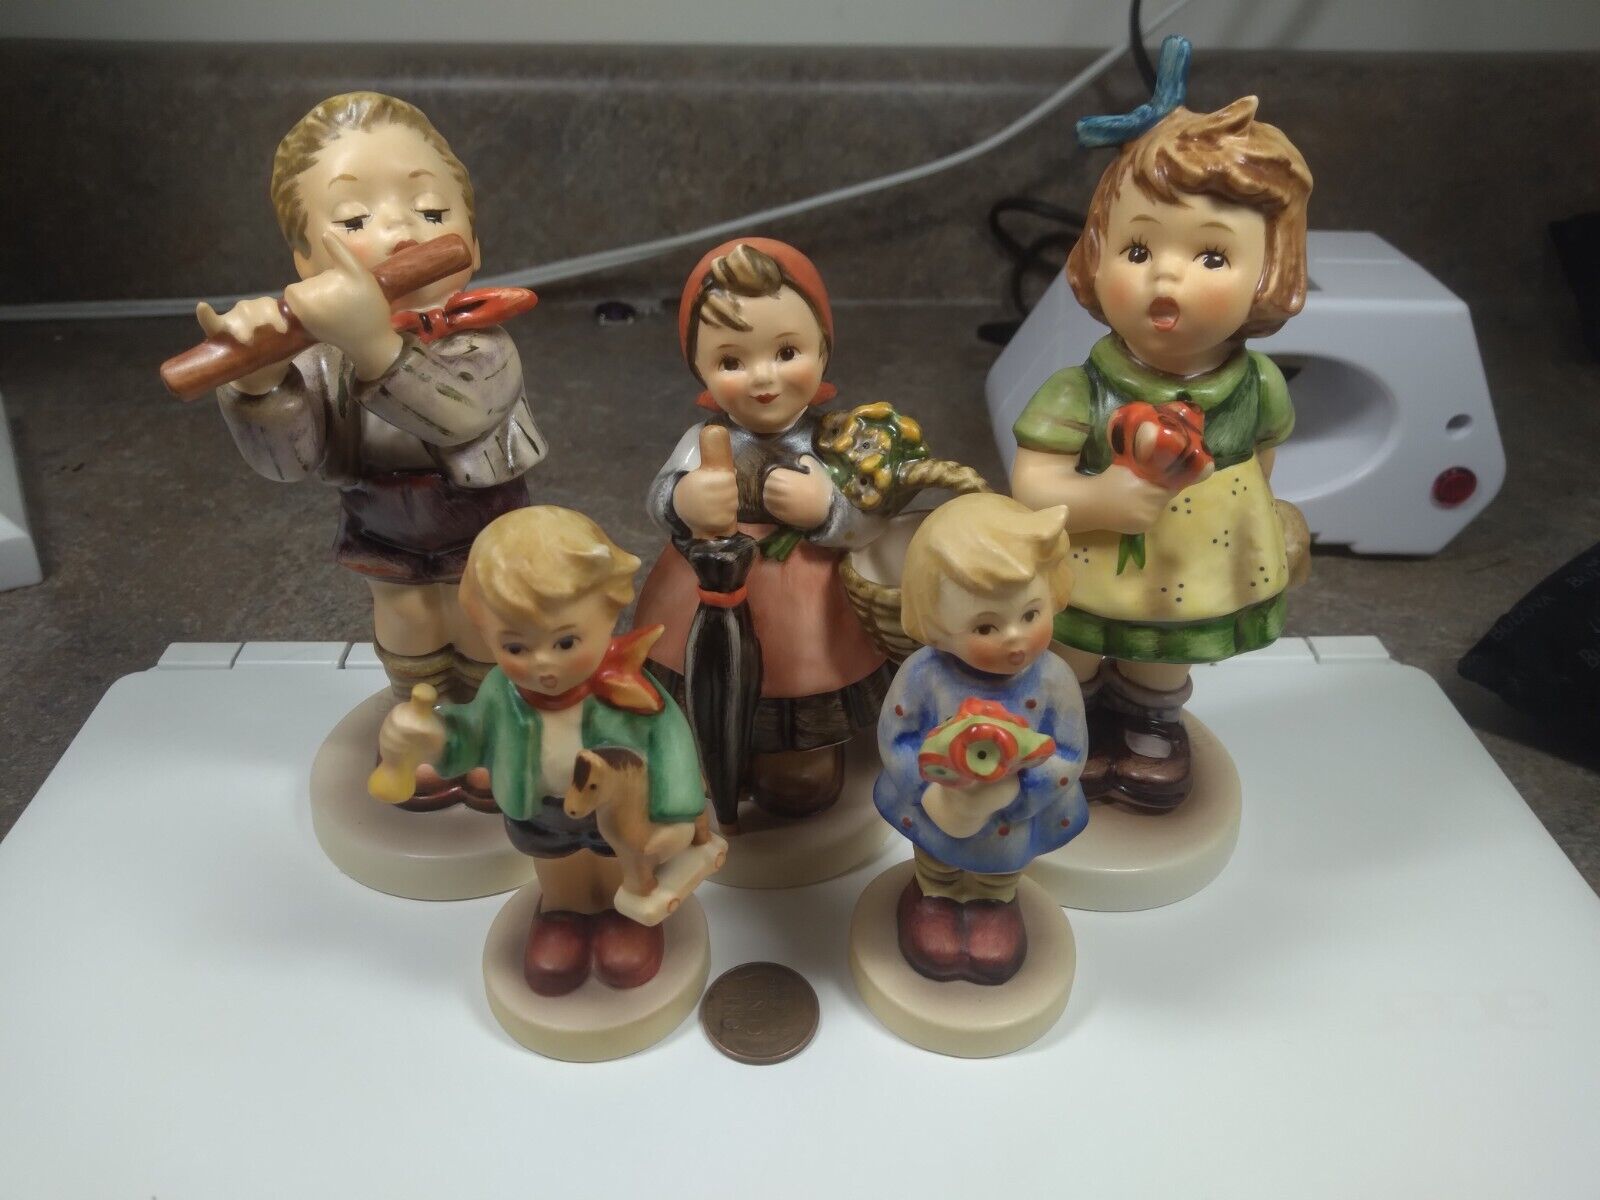 Lot of 5 Vintage Hummel Figurines 239/0,  239/A,  350,  431,  447  Tmk5 and Tmk6